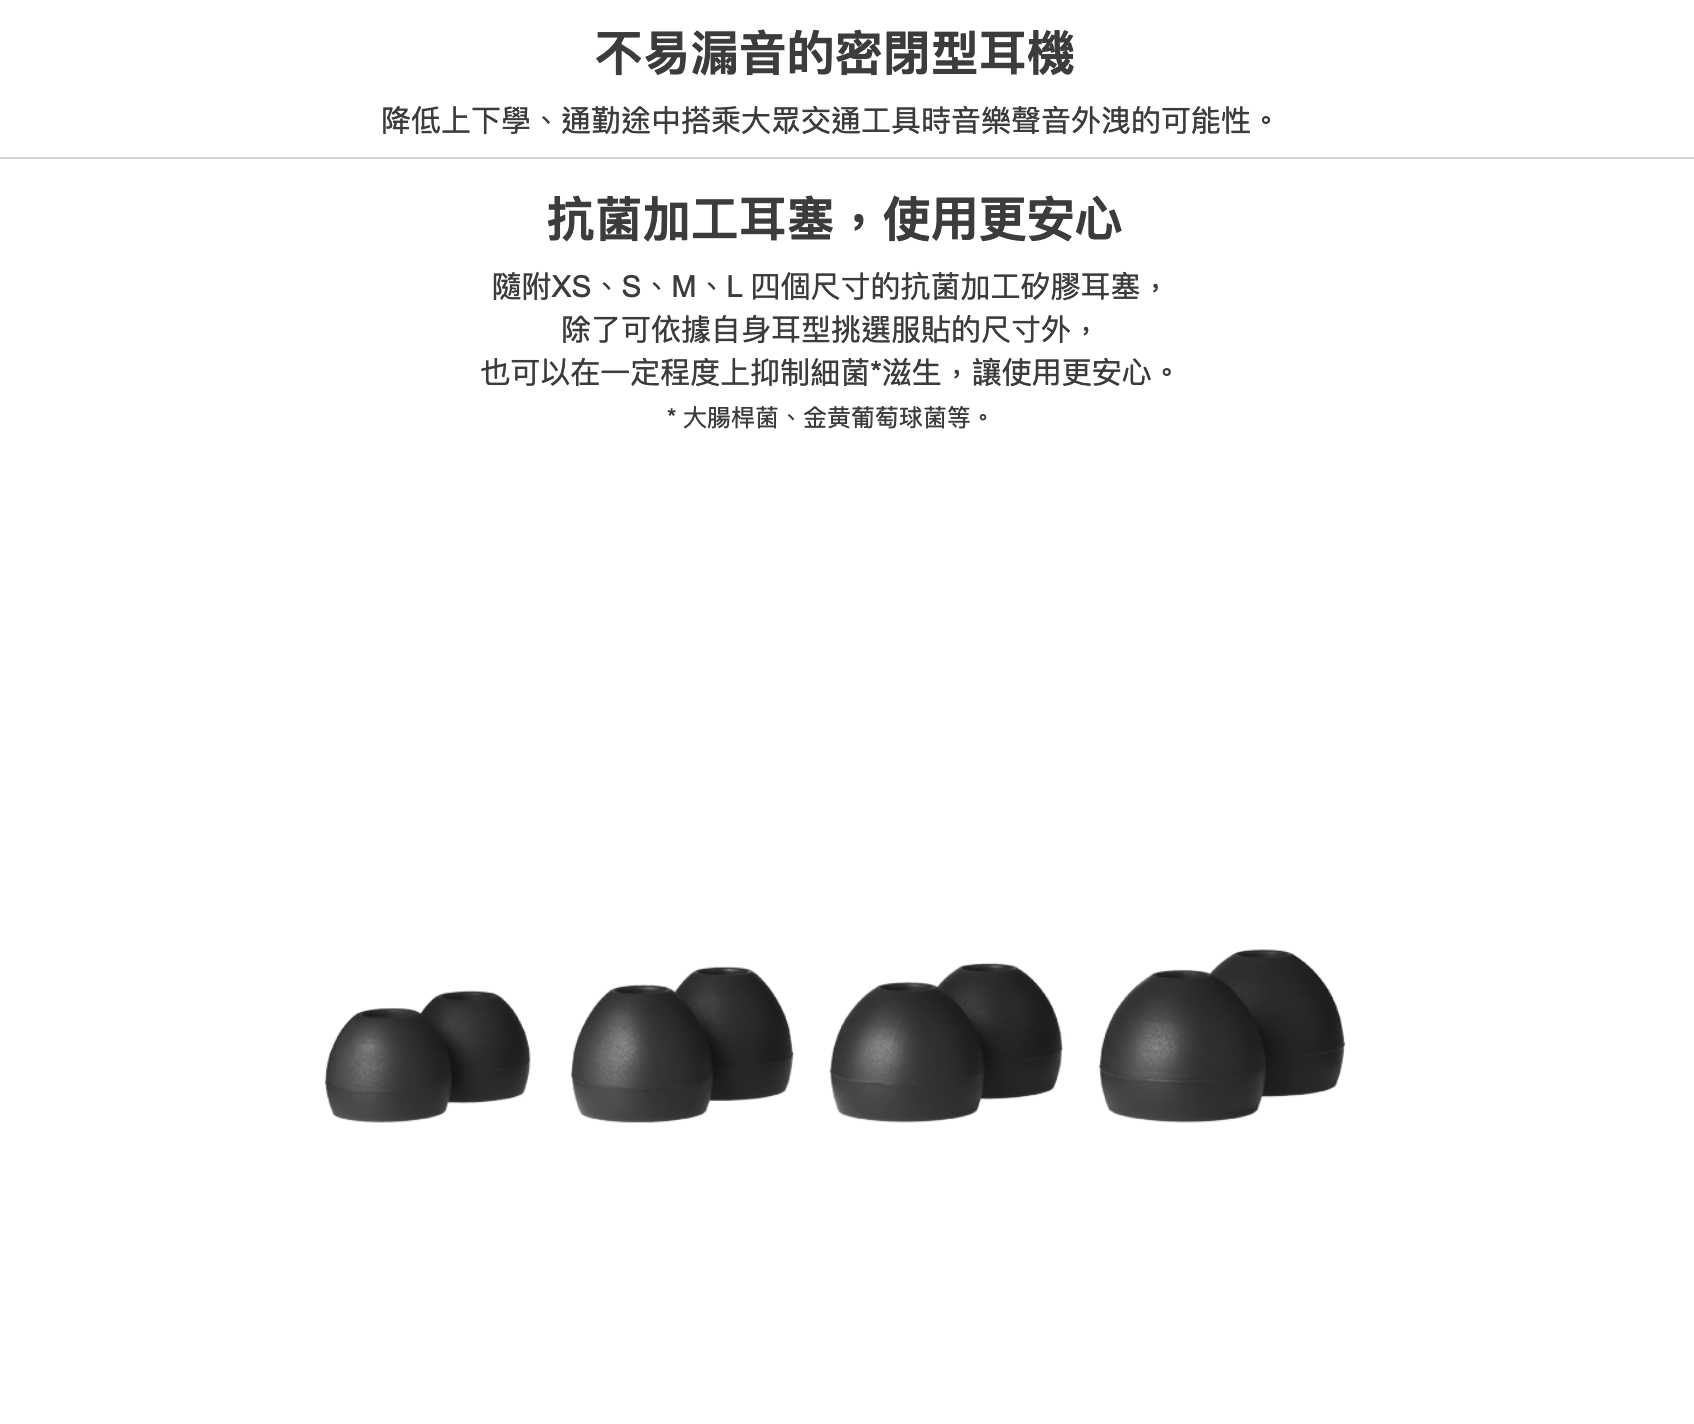 鐵三角 ATH-CK350X 多色可選 耳道式耳機 ATH-CK350Xis｜My Ear 耳機專門店